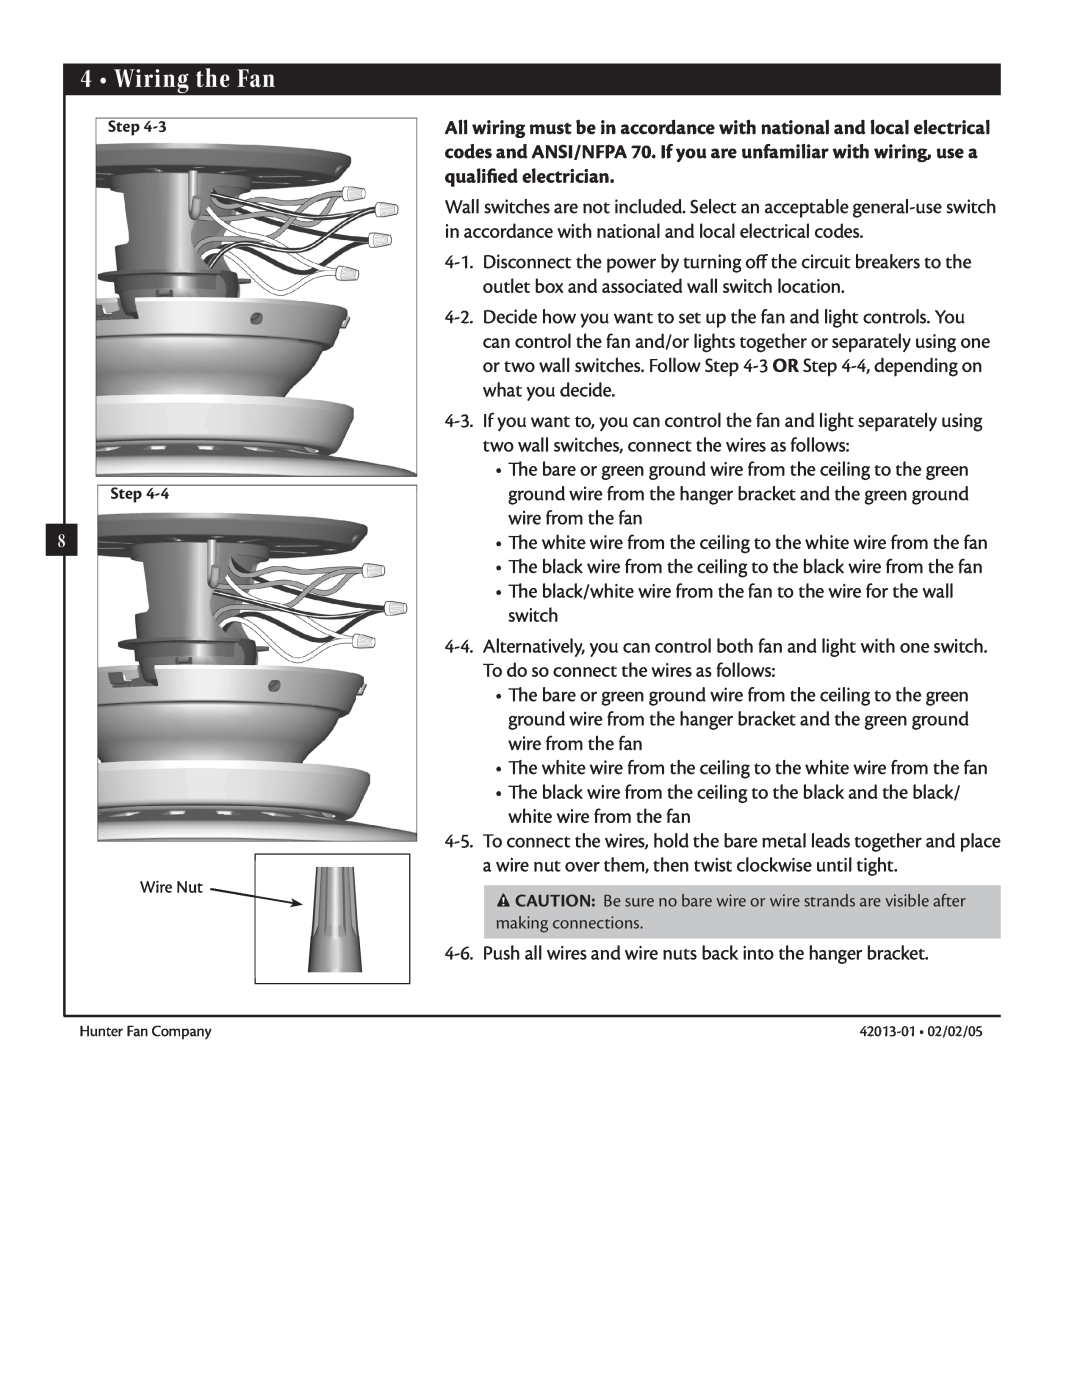 Hunter Fan 42013-01 manual Wiring the Fan, Step Step 